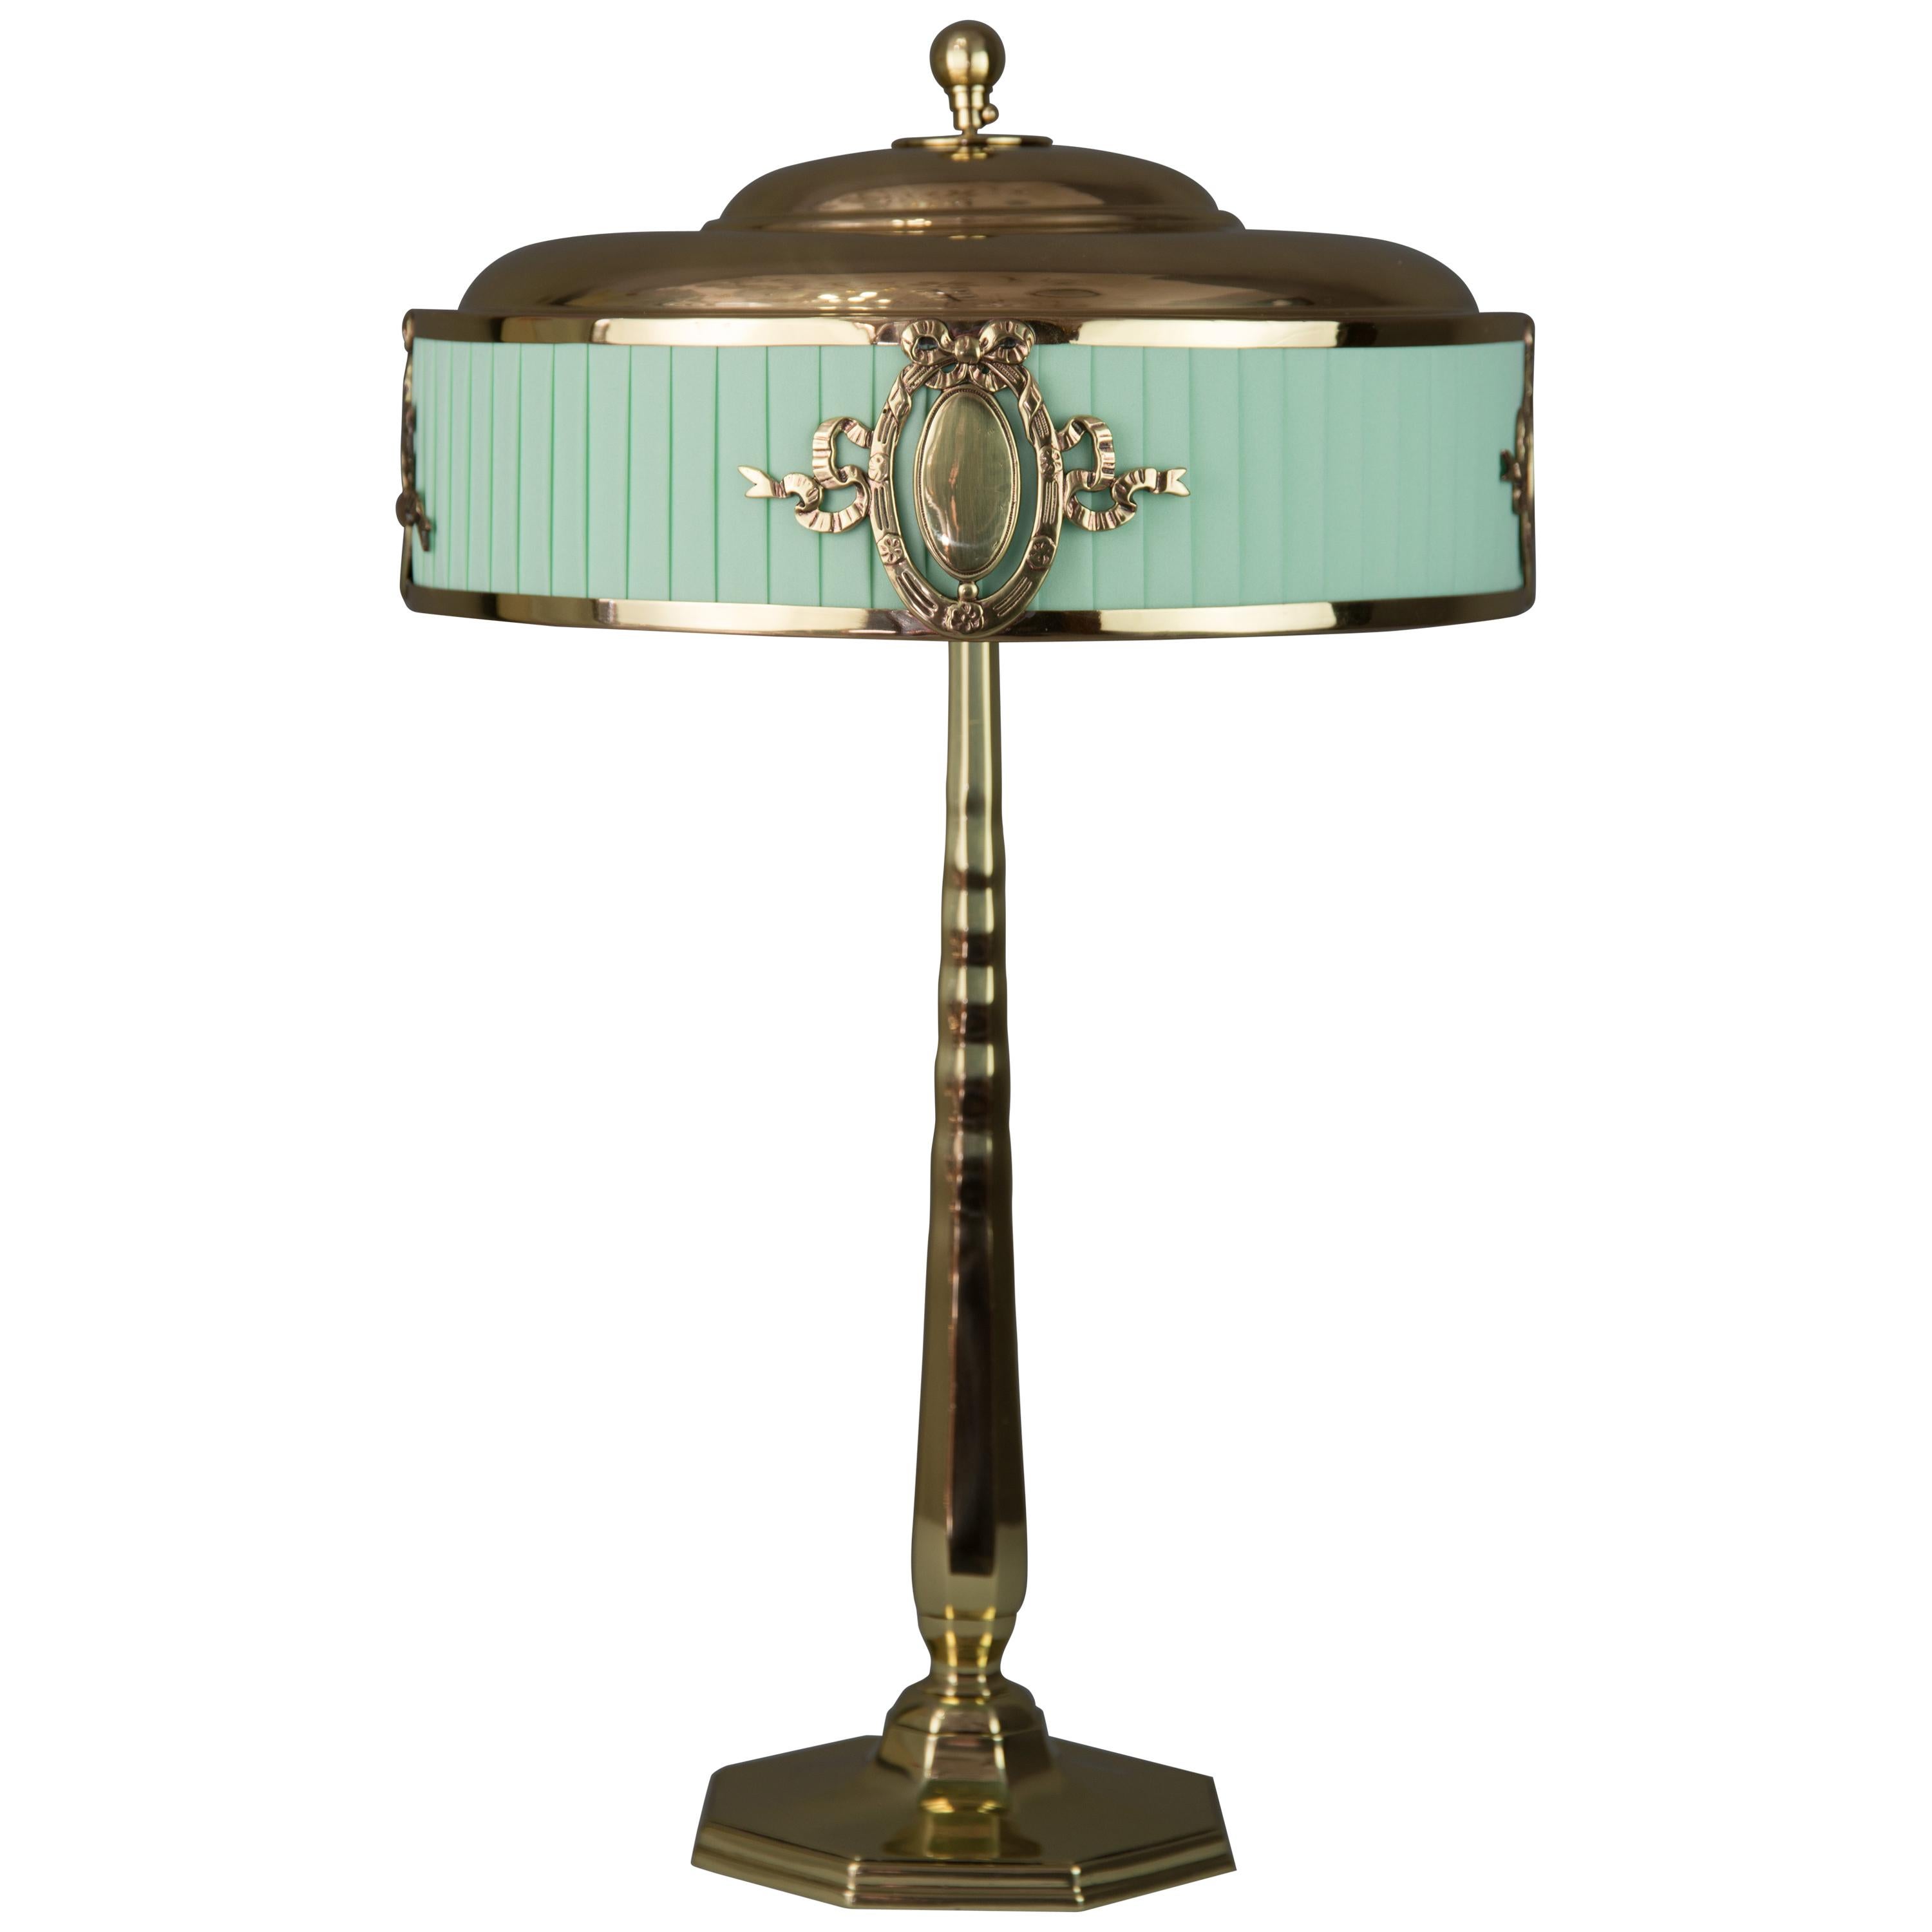 Solid Jugendstil Table Lamp, circa 1908